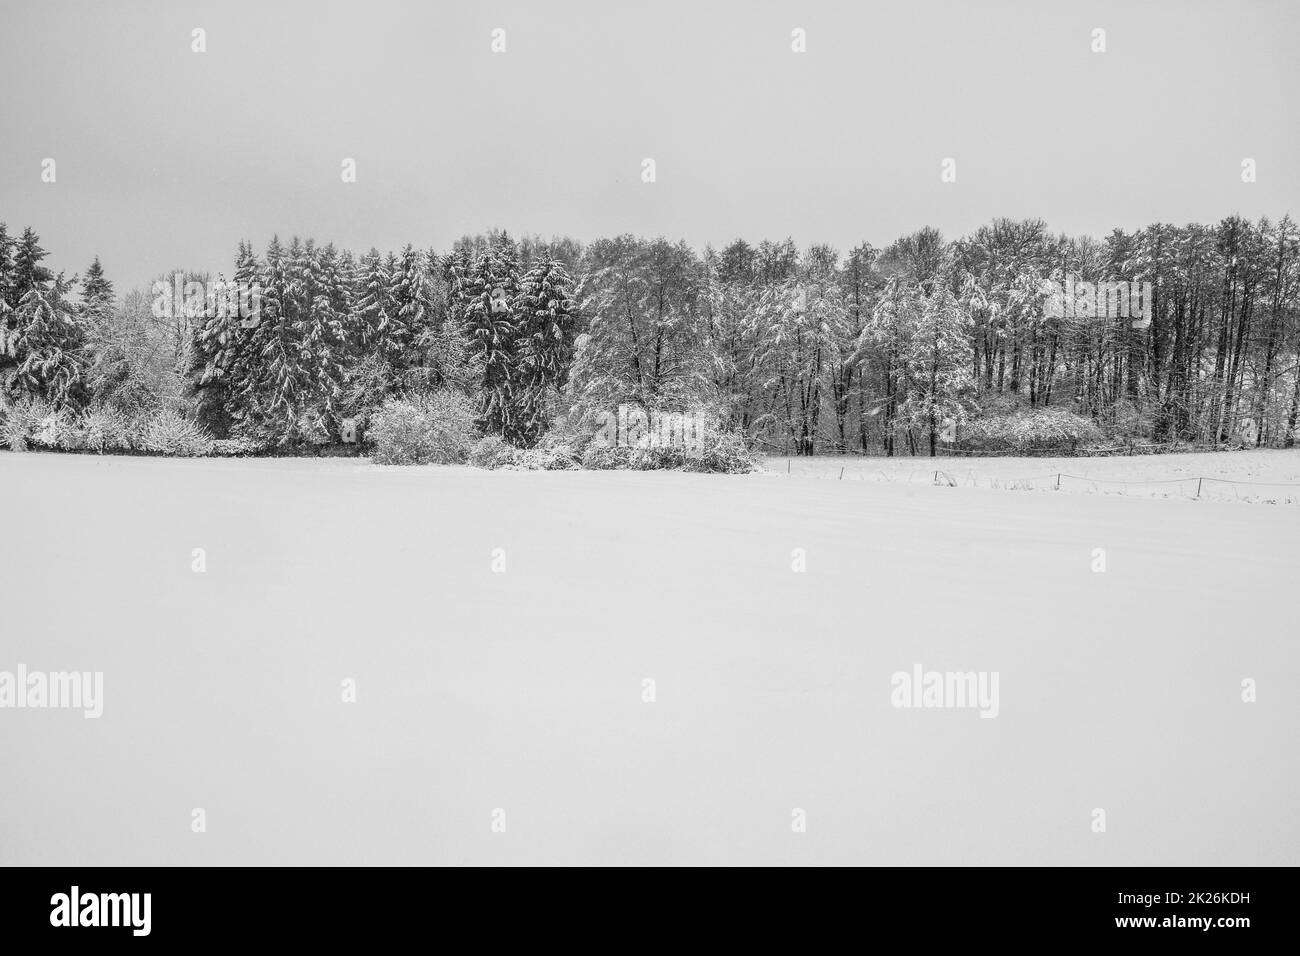 Paysage d'hiver avec beaucoup de neige et une rangée d'arbres Banque D'Images